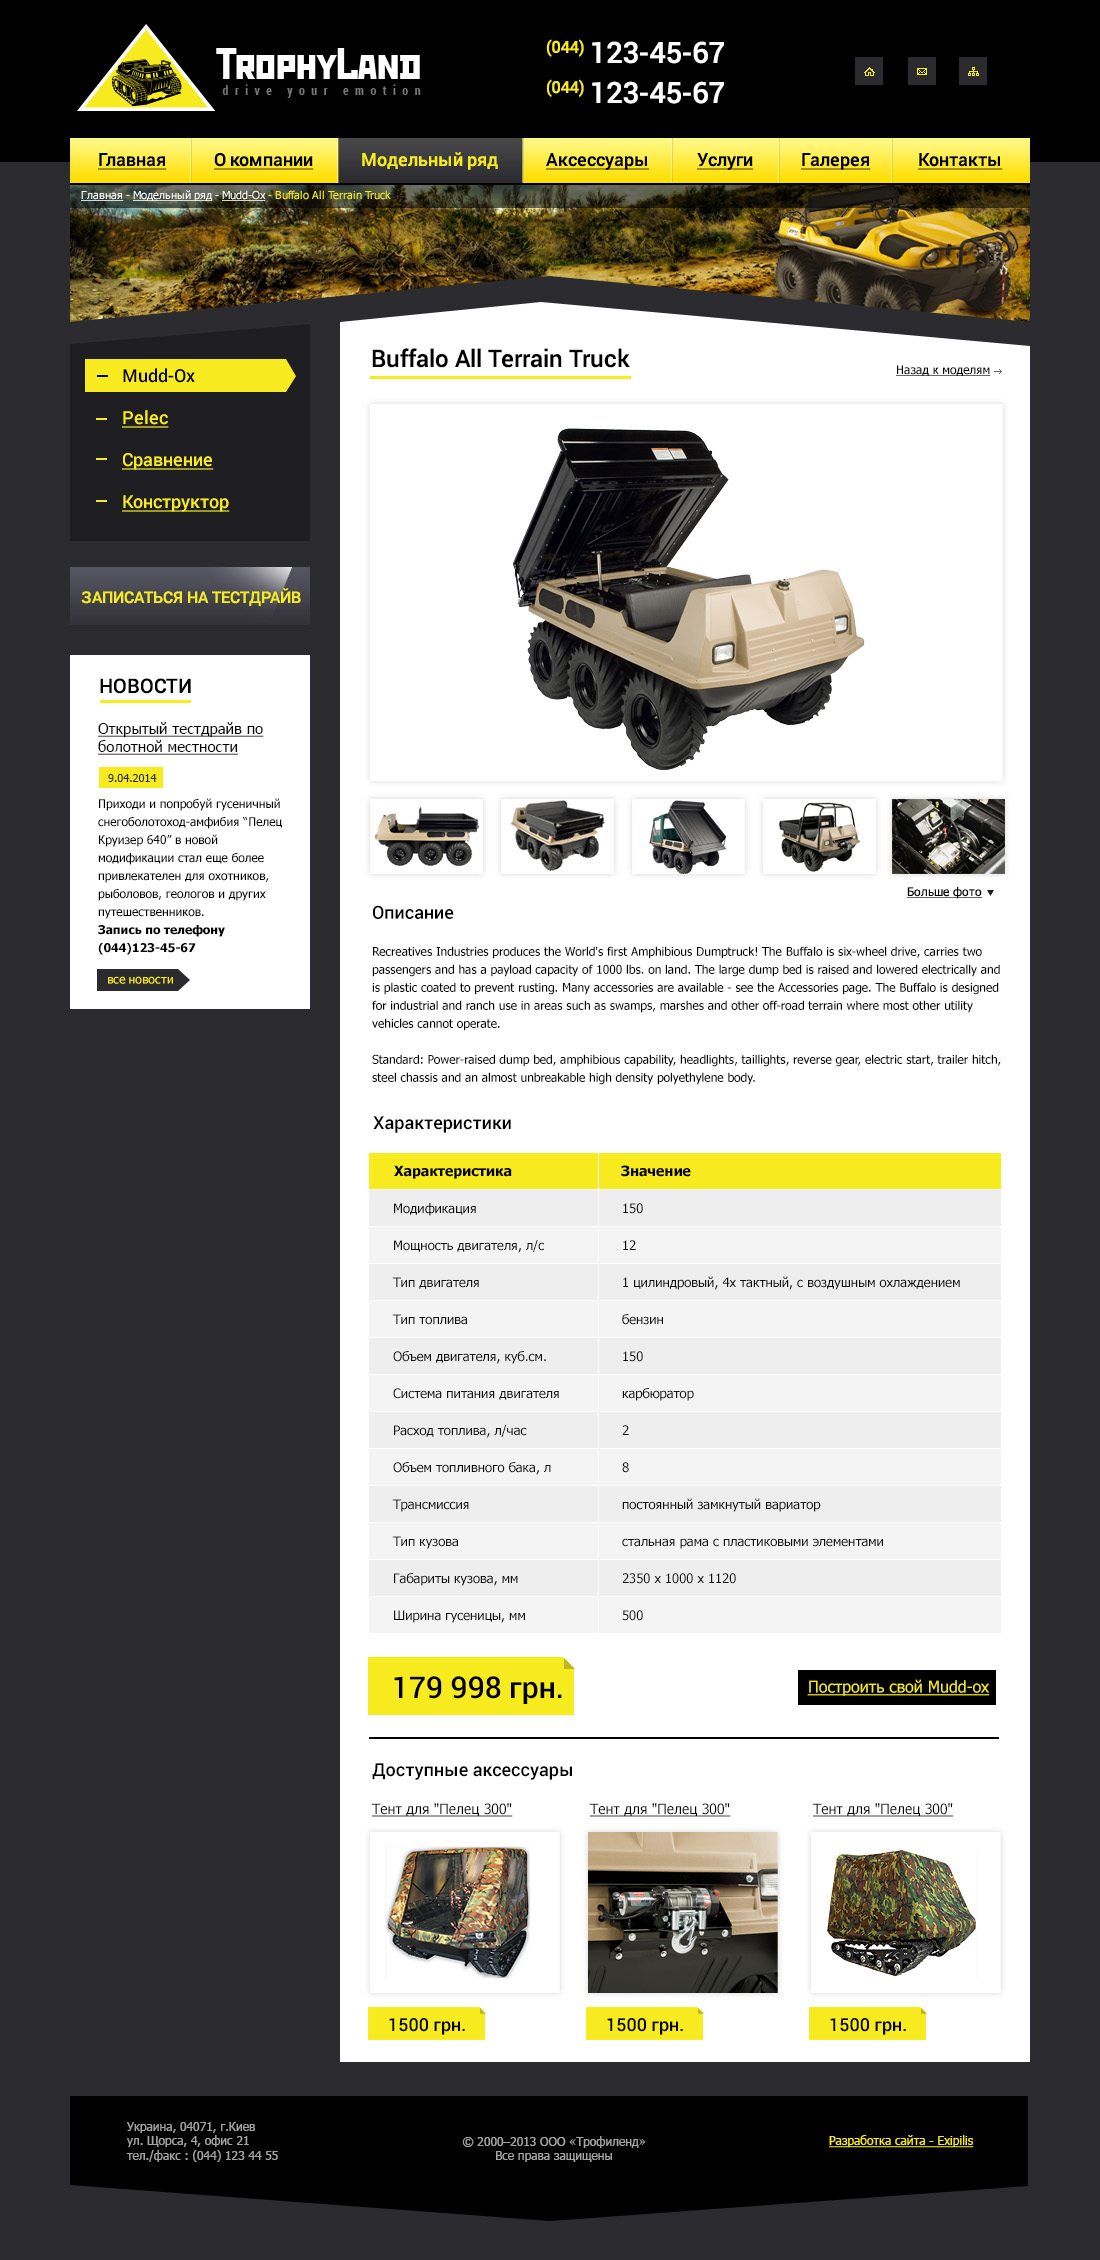 Model page design of TrophyLand website